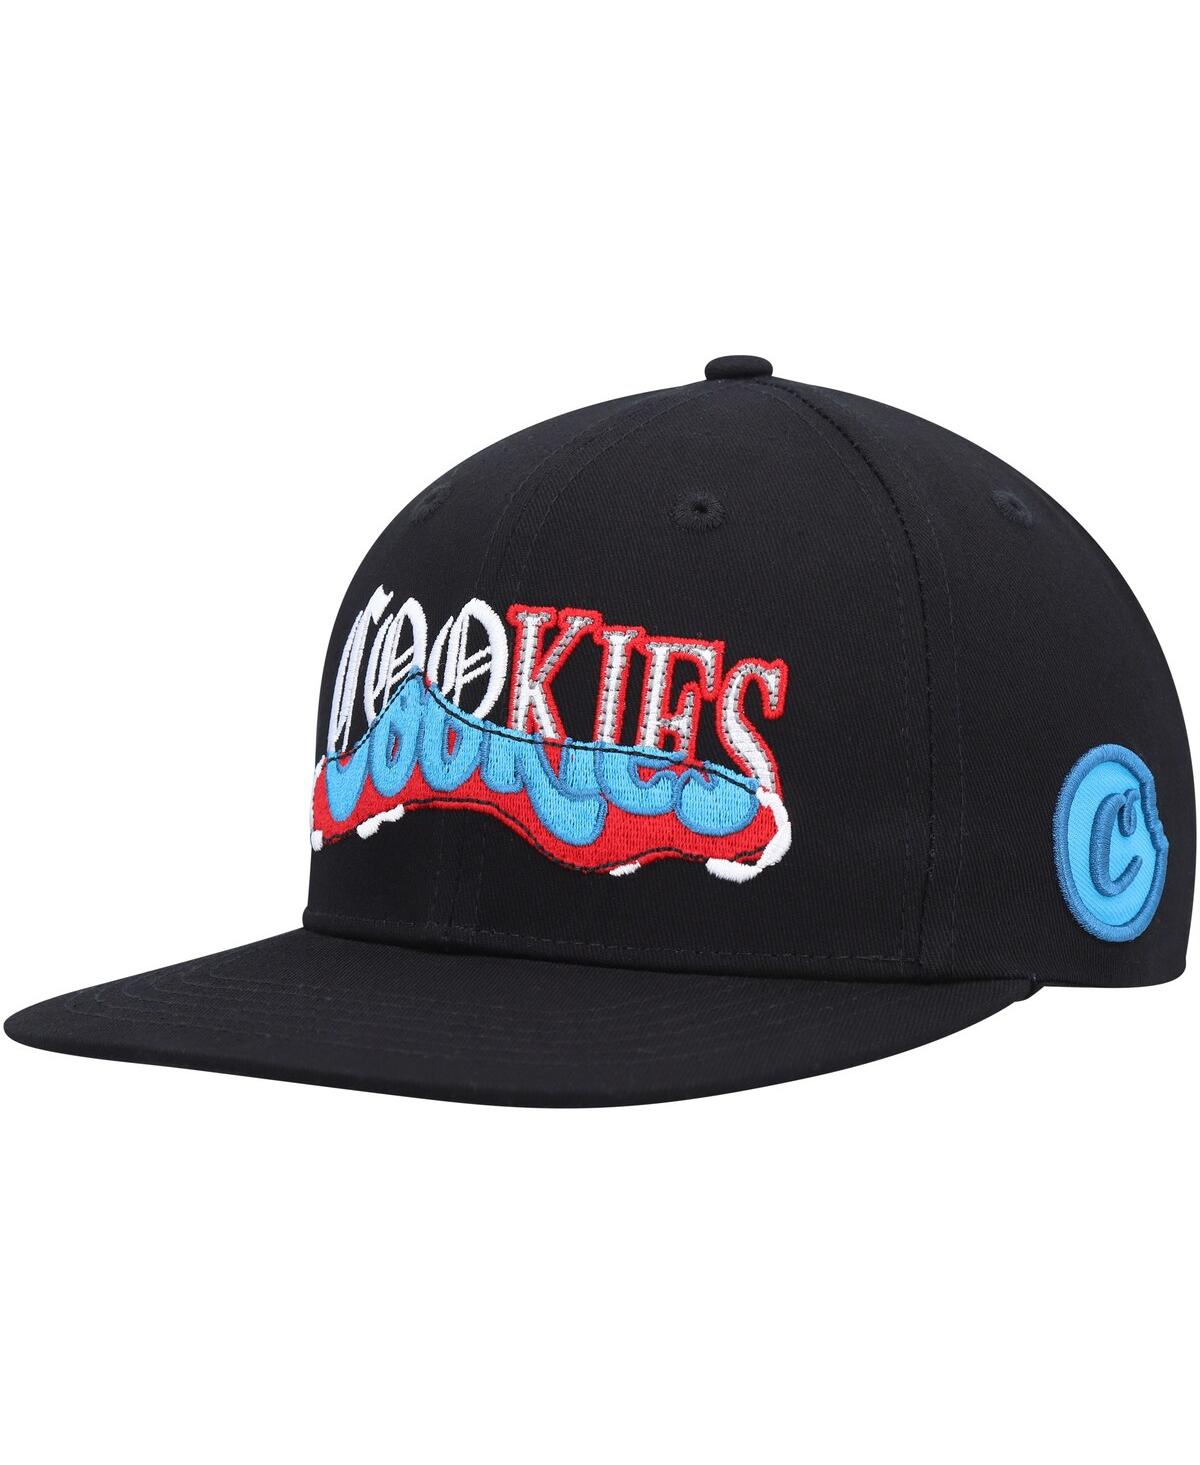 Cookies Men's  Black Upper Echelon Snapback Hat